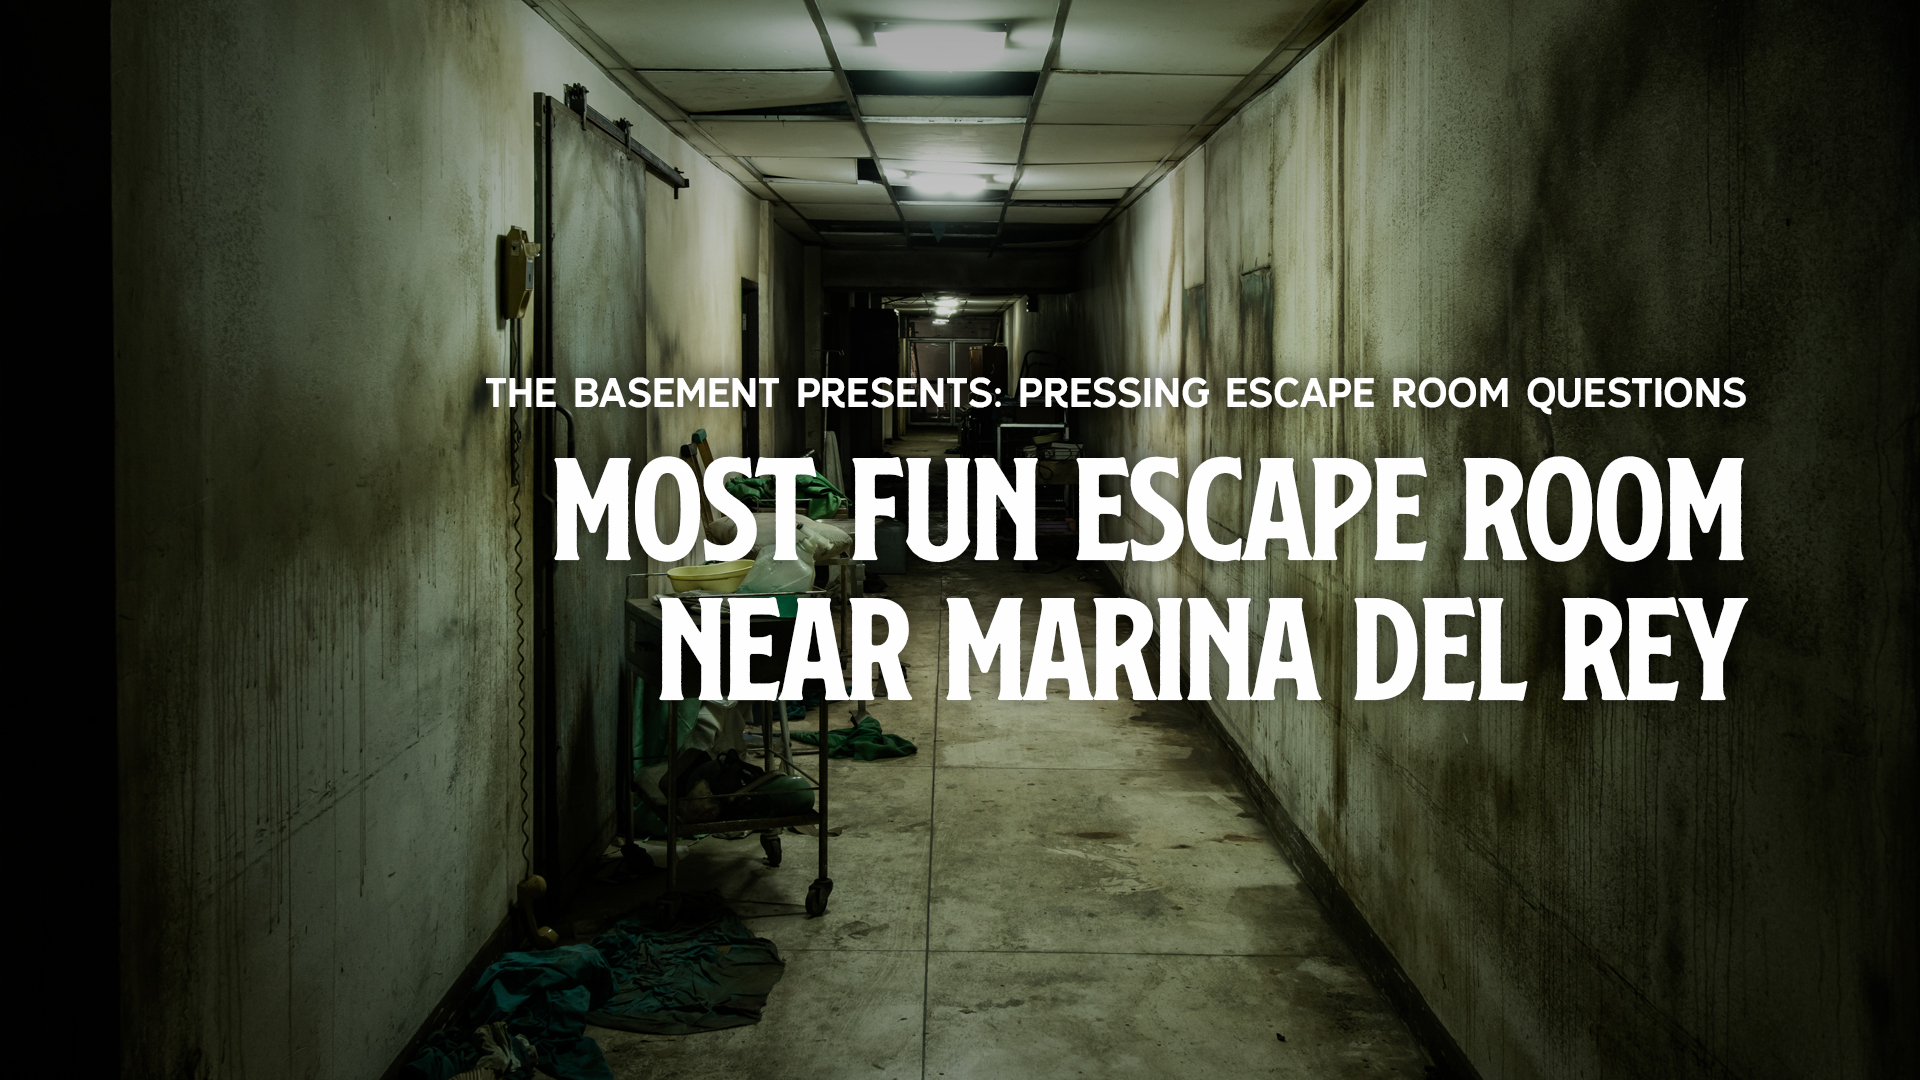 THE MOST FUN ESCAPE ROOM: MARINA DEL REY, CA